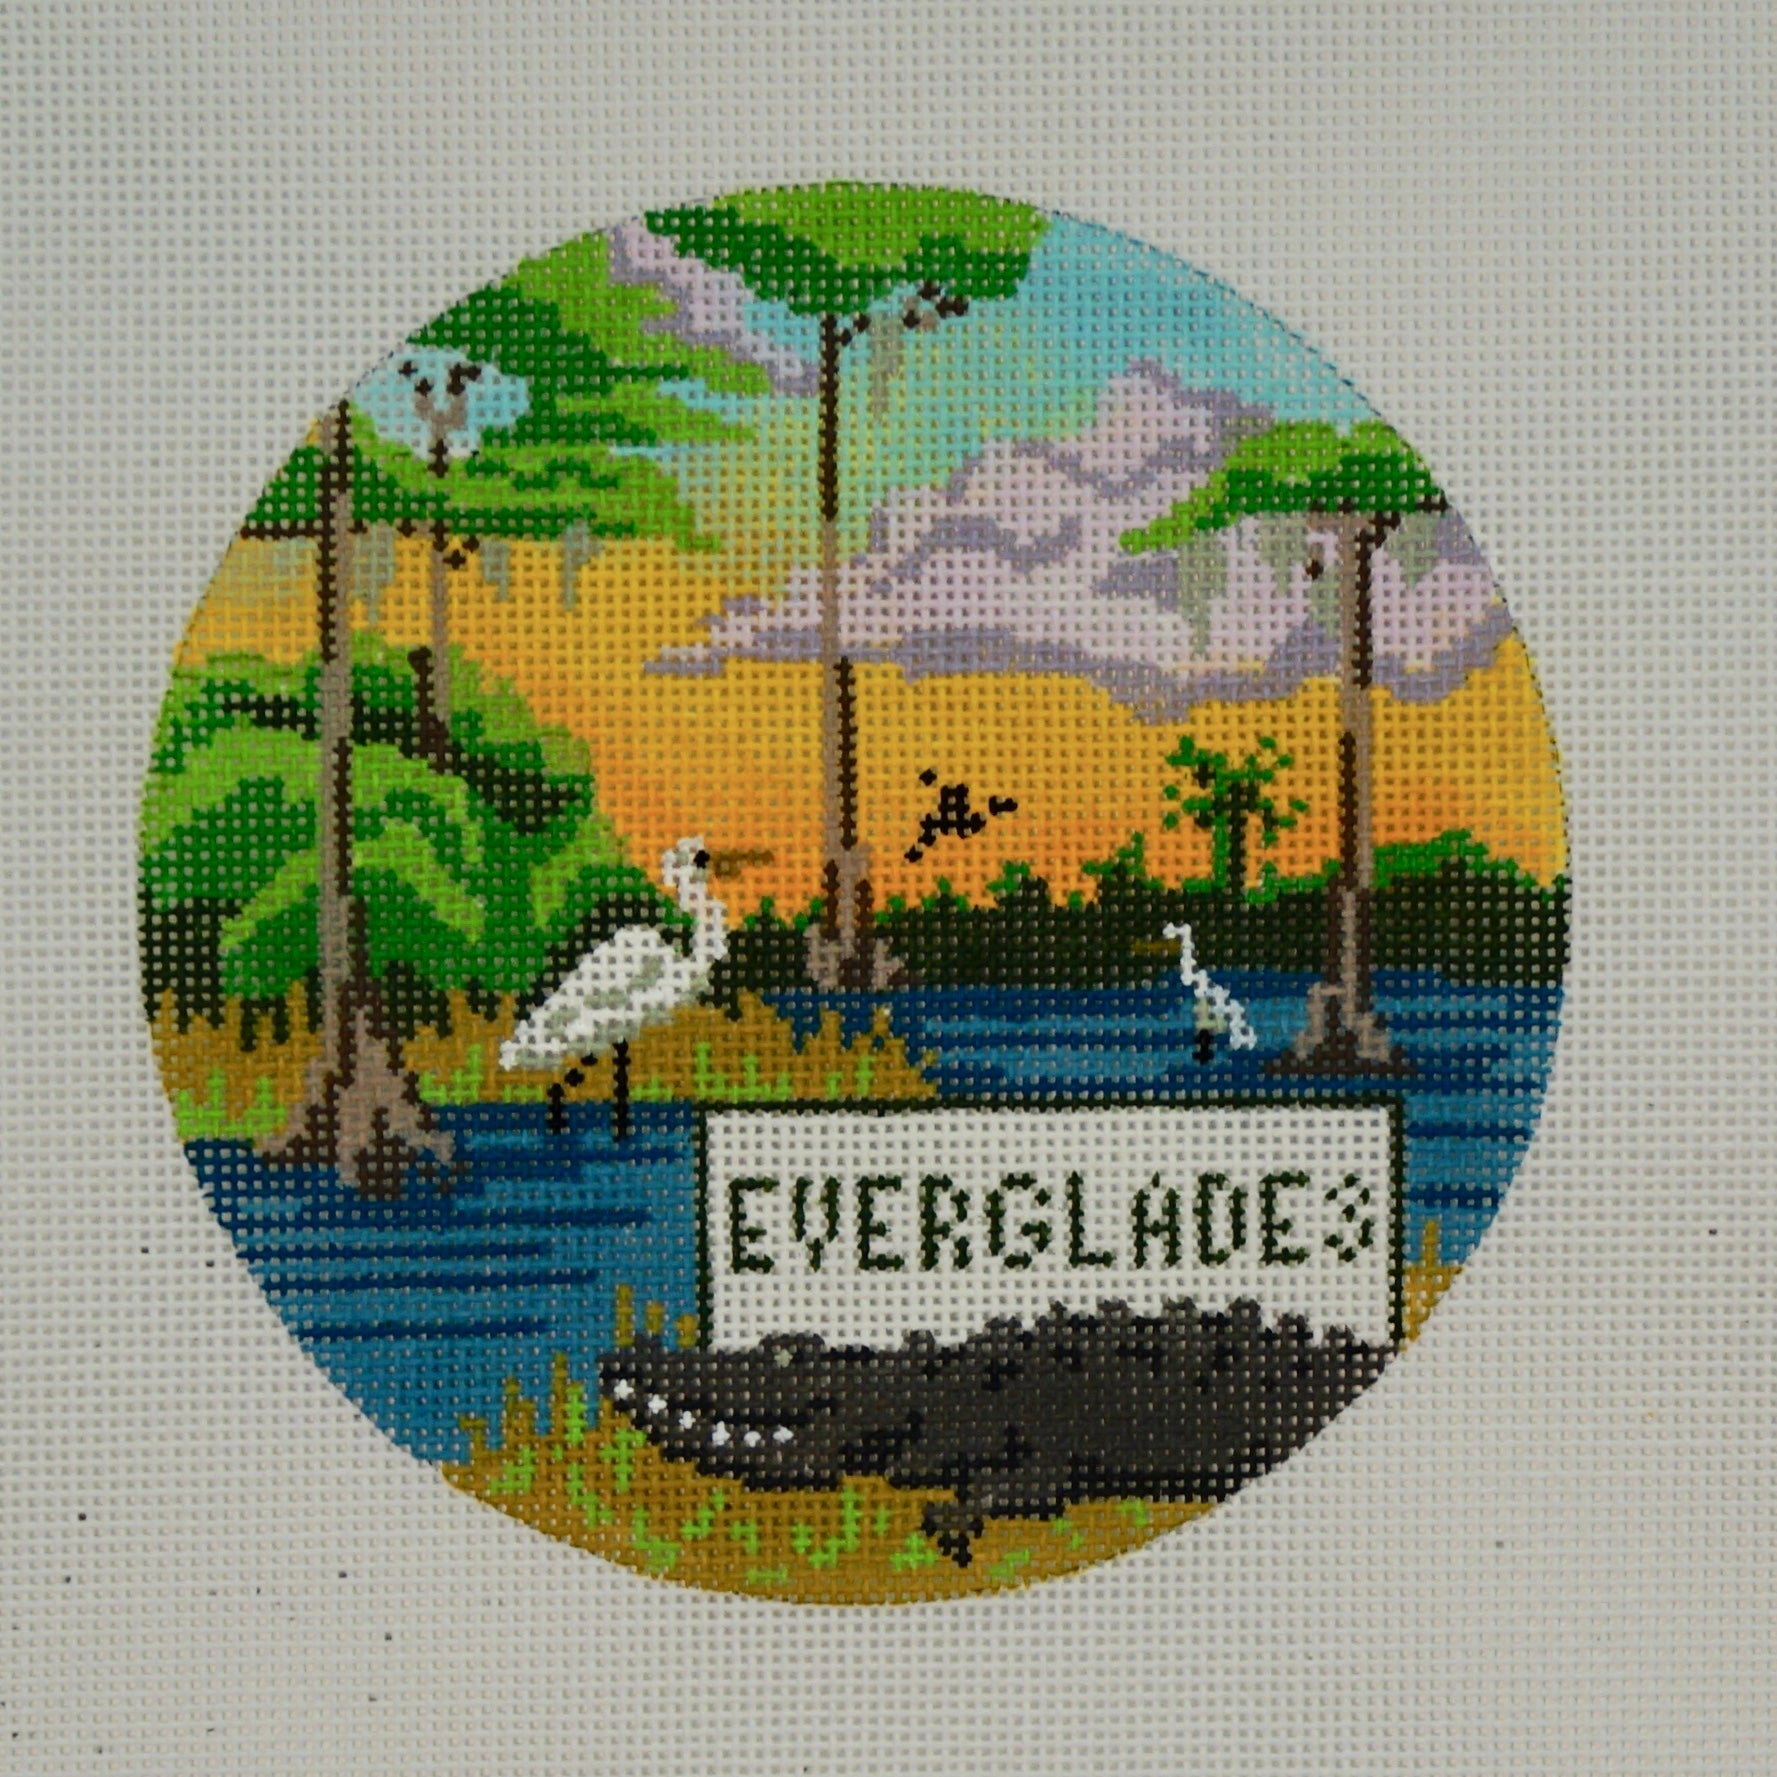 Explore America - Everglades - The Flying Needles